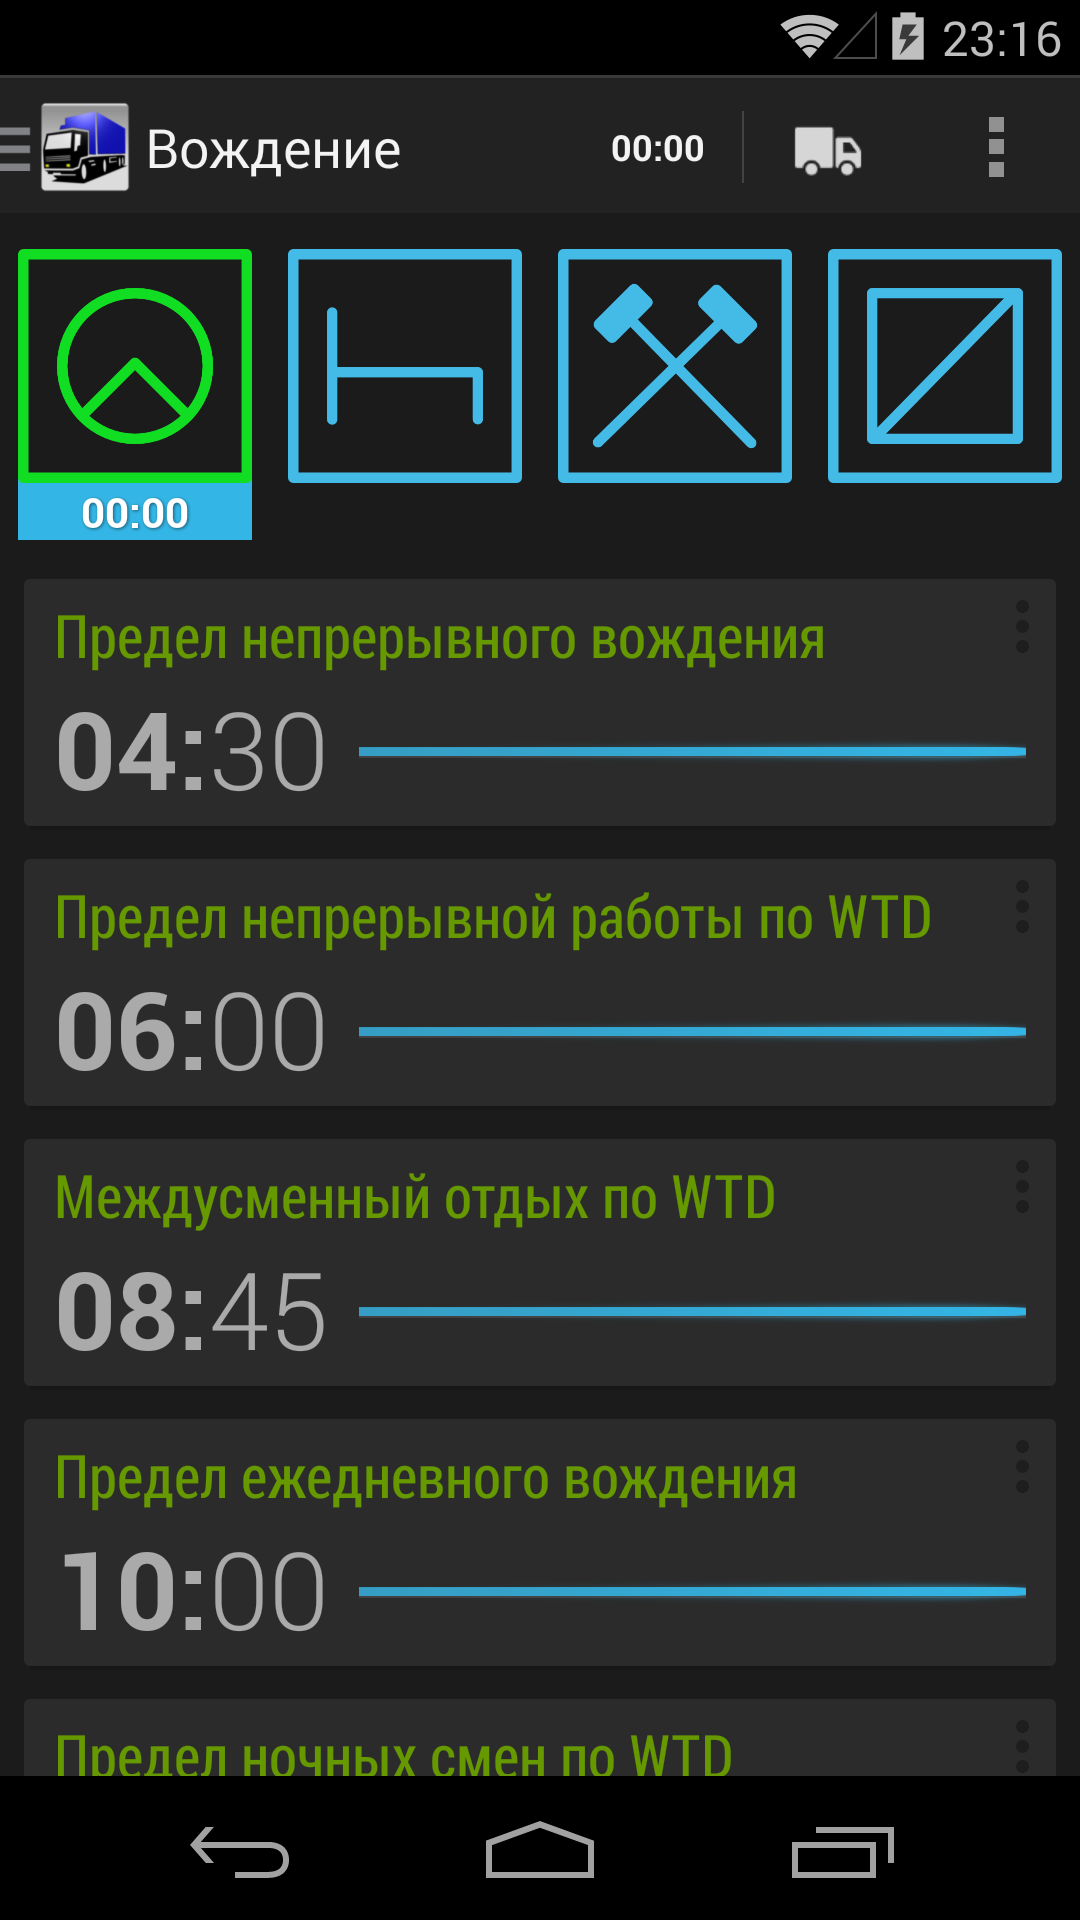 Android application TruckerTimer screenshort